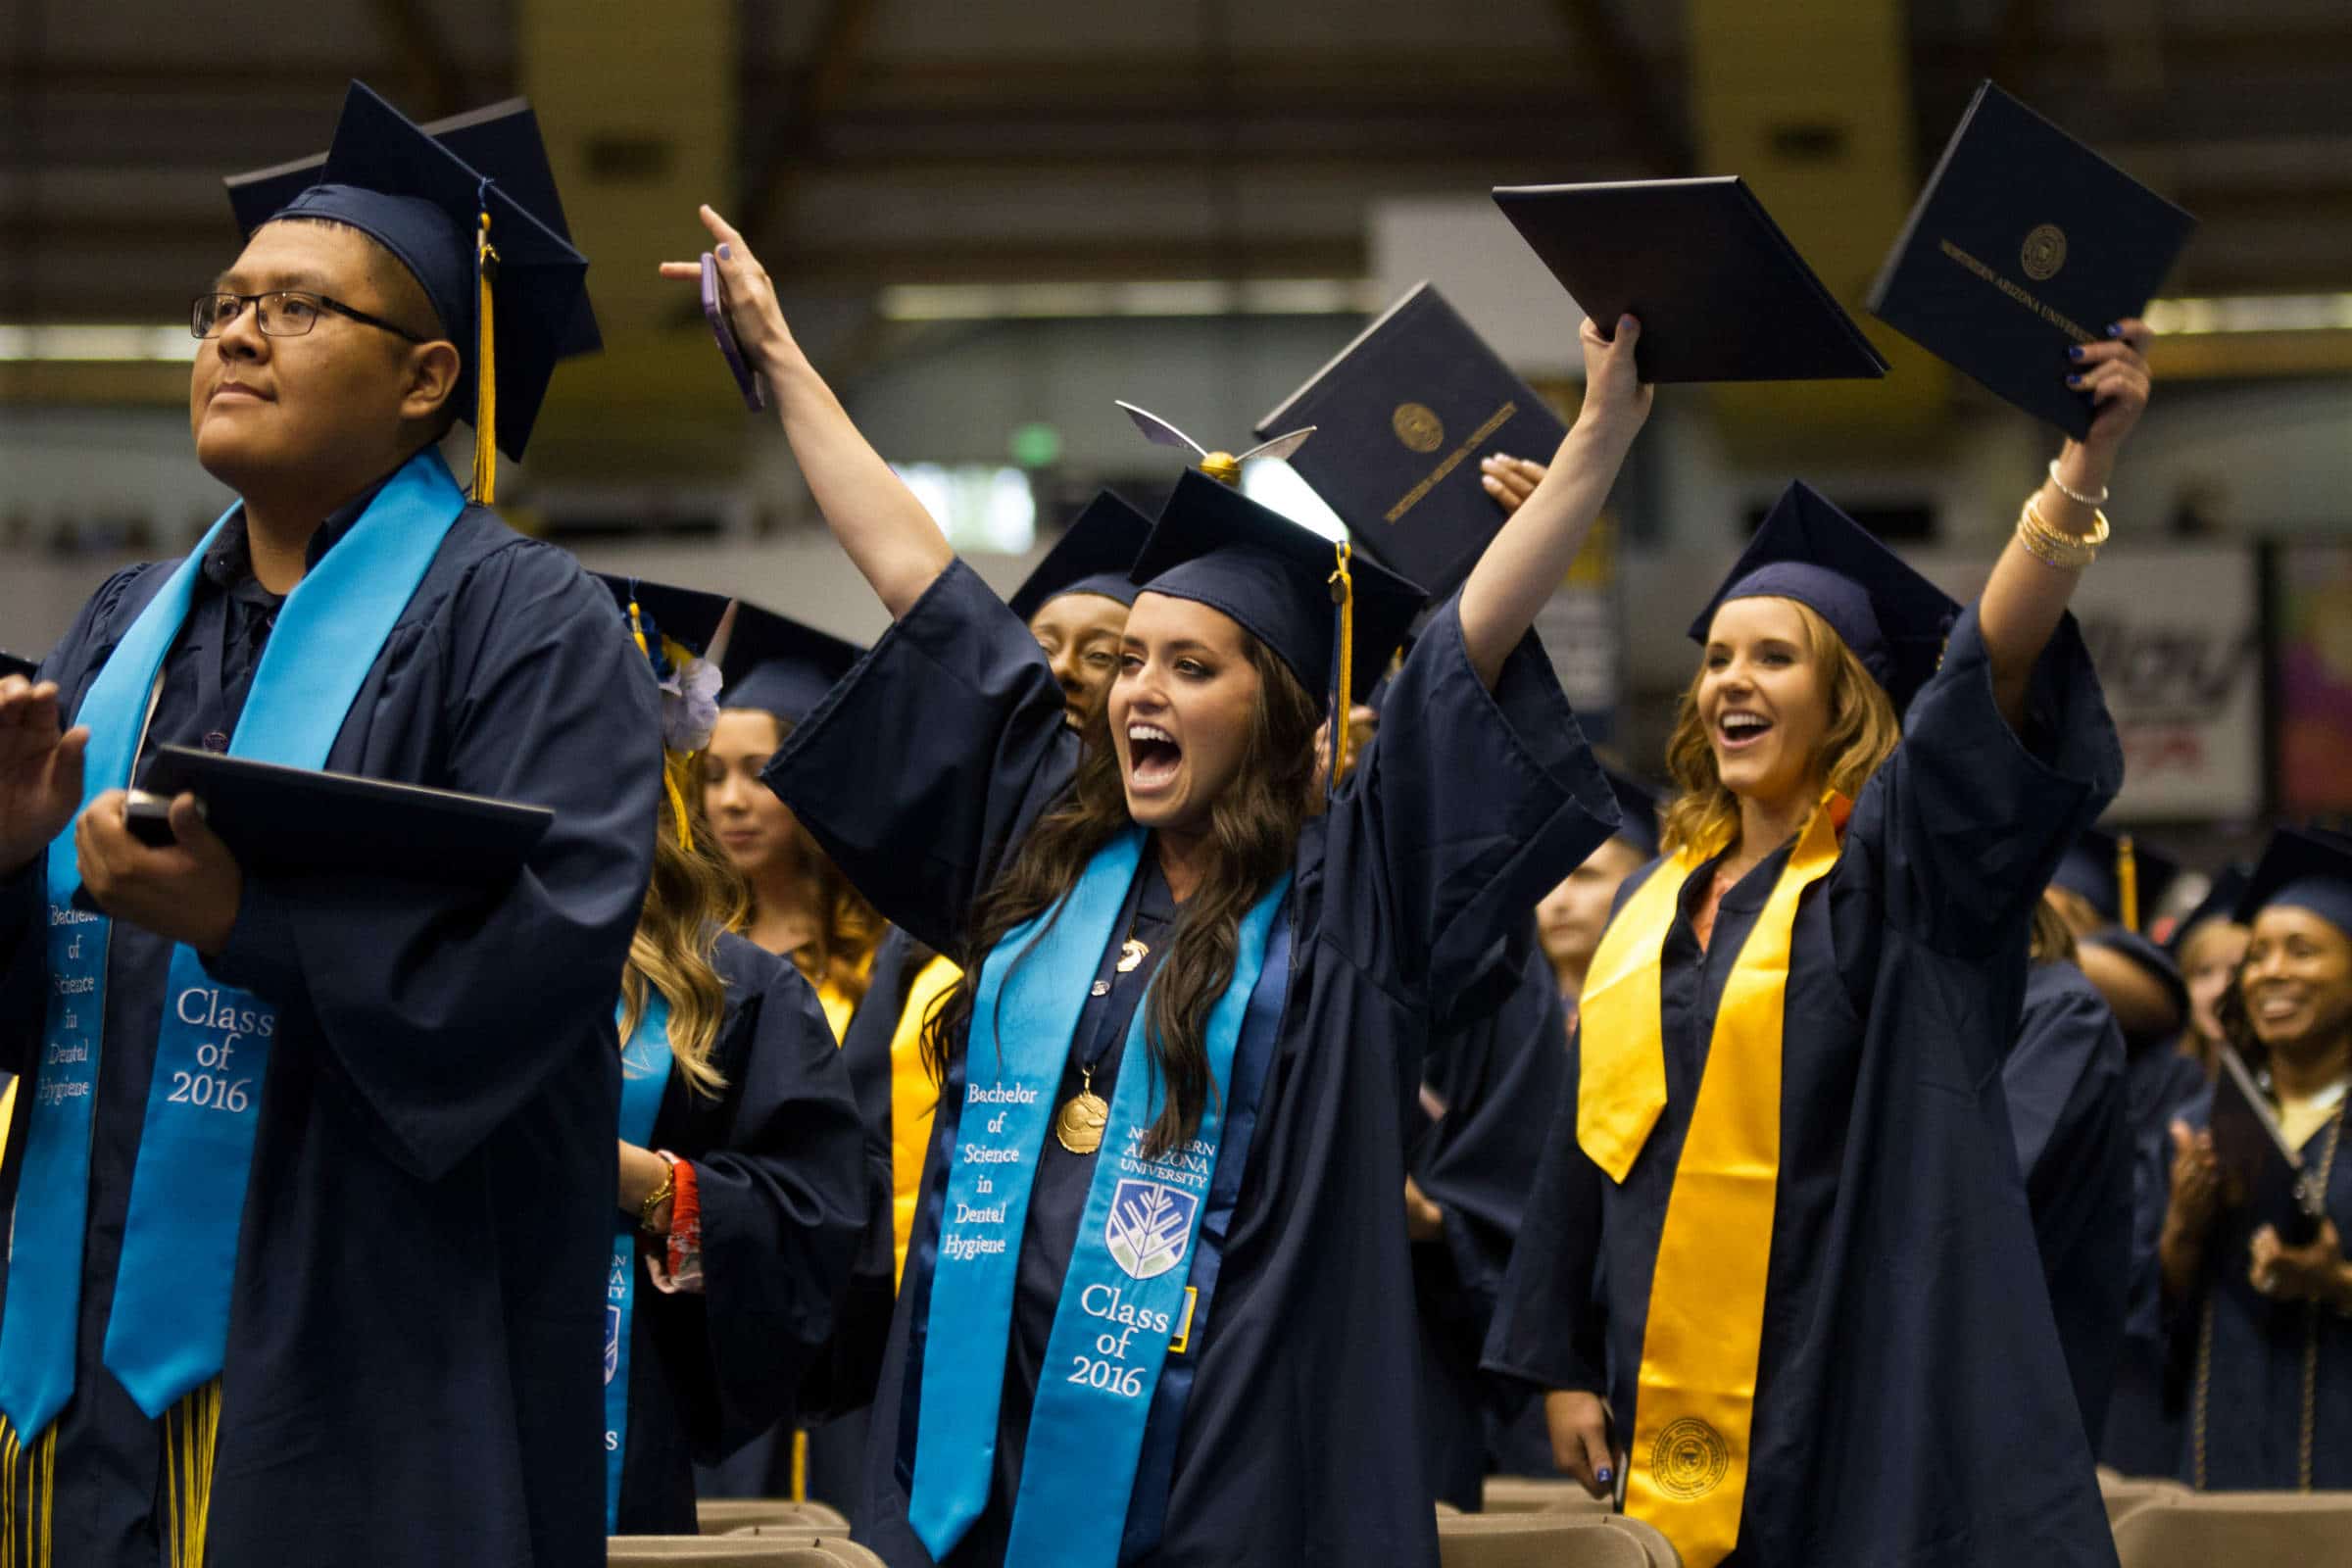 NAU graduates raise their diplomas in celebration.